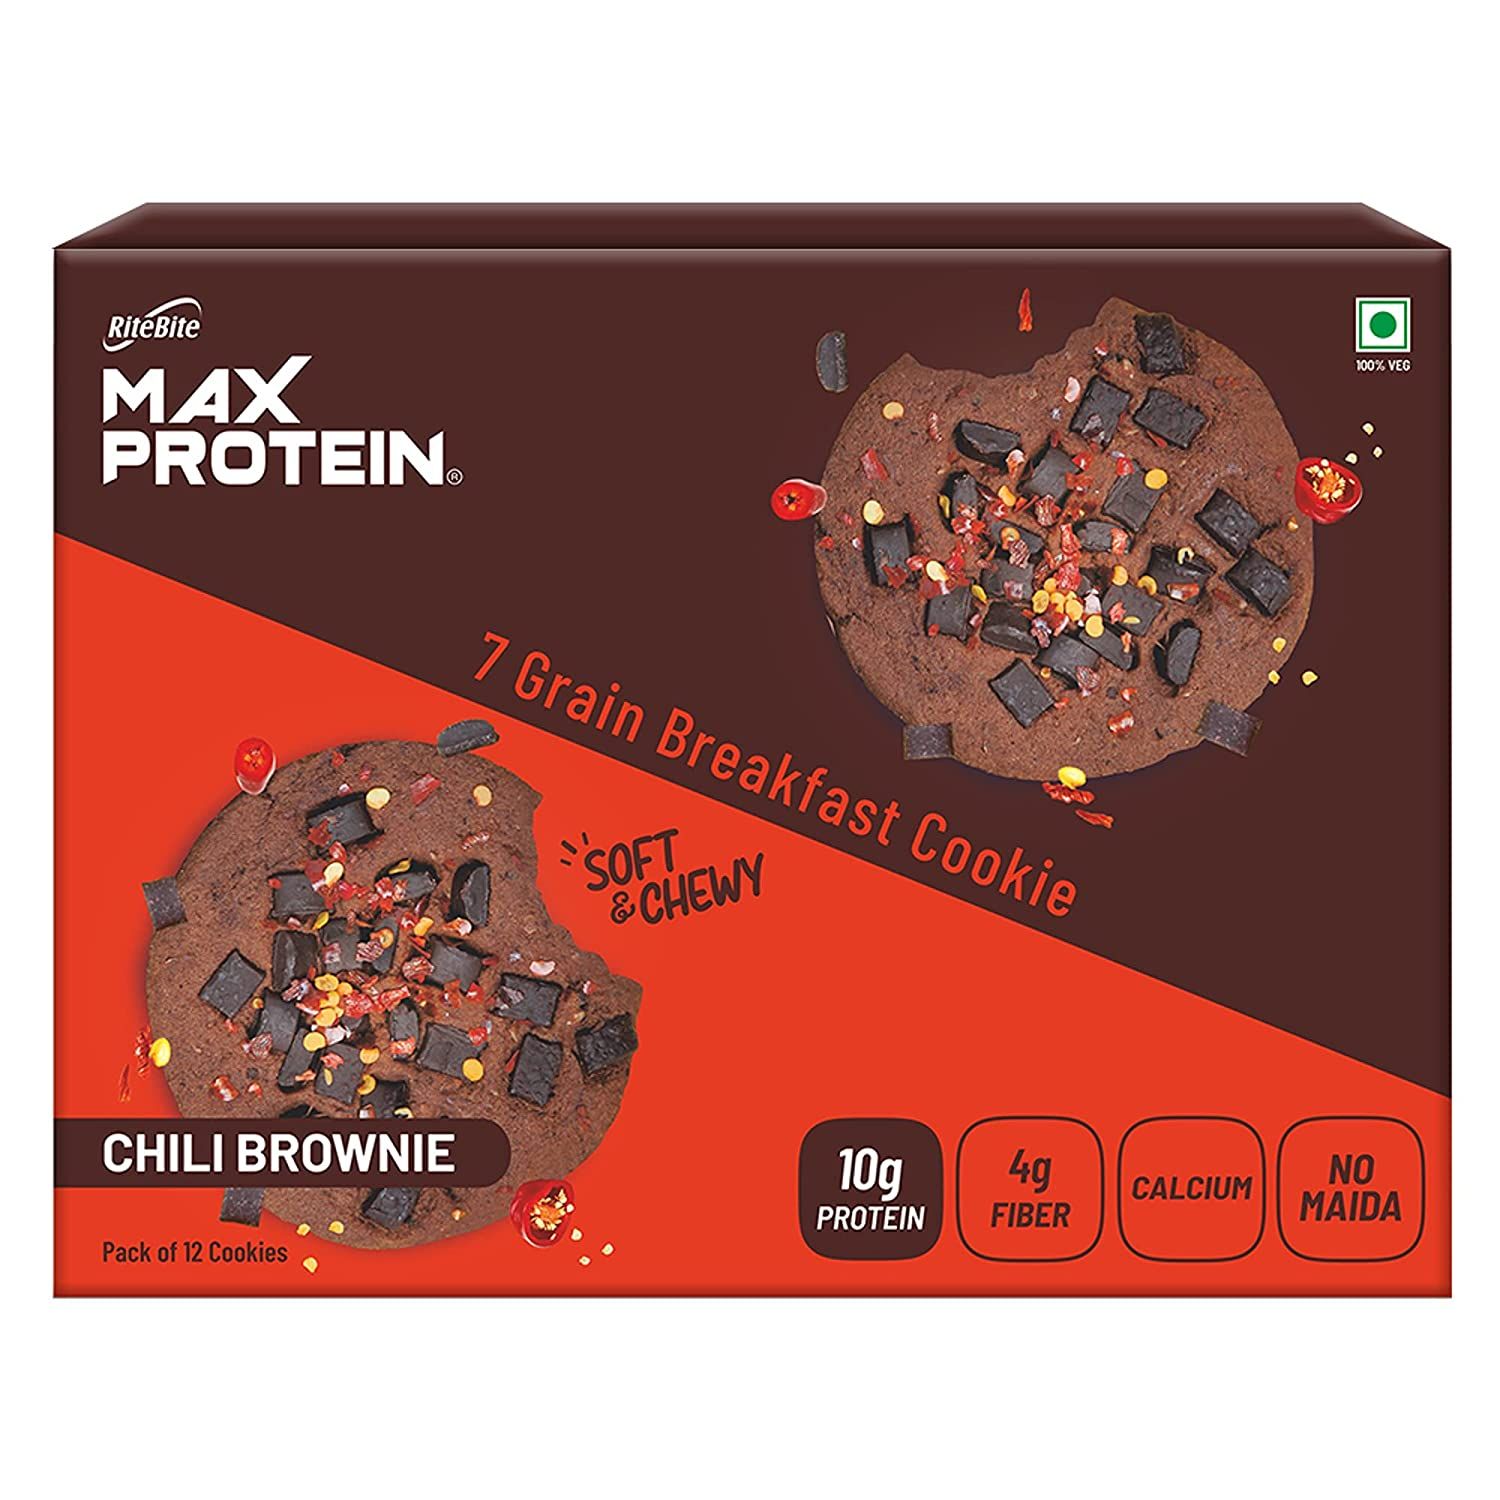 RiteBite Max Protein Cookies Chili Chocolate Image